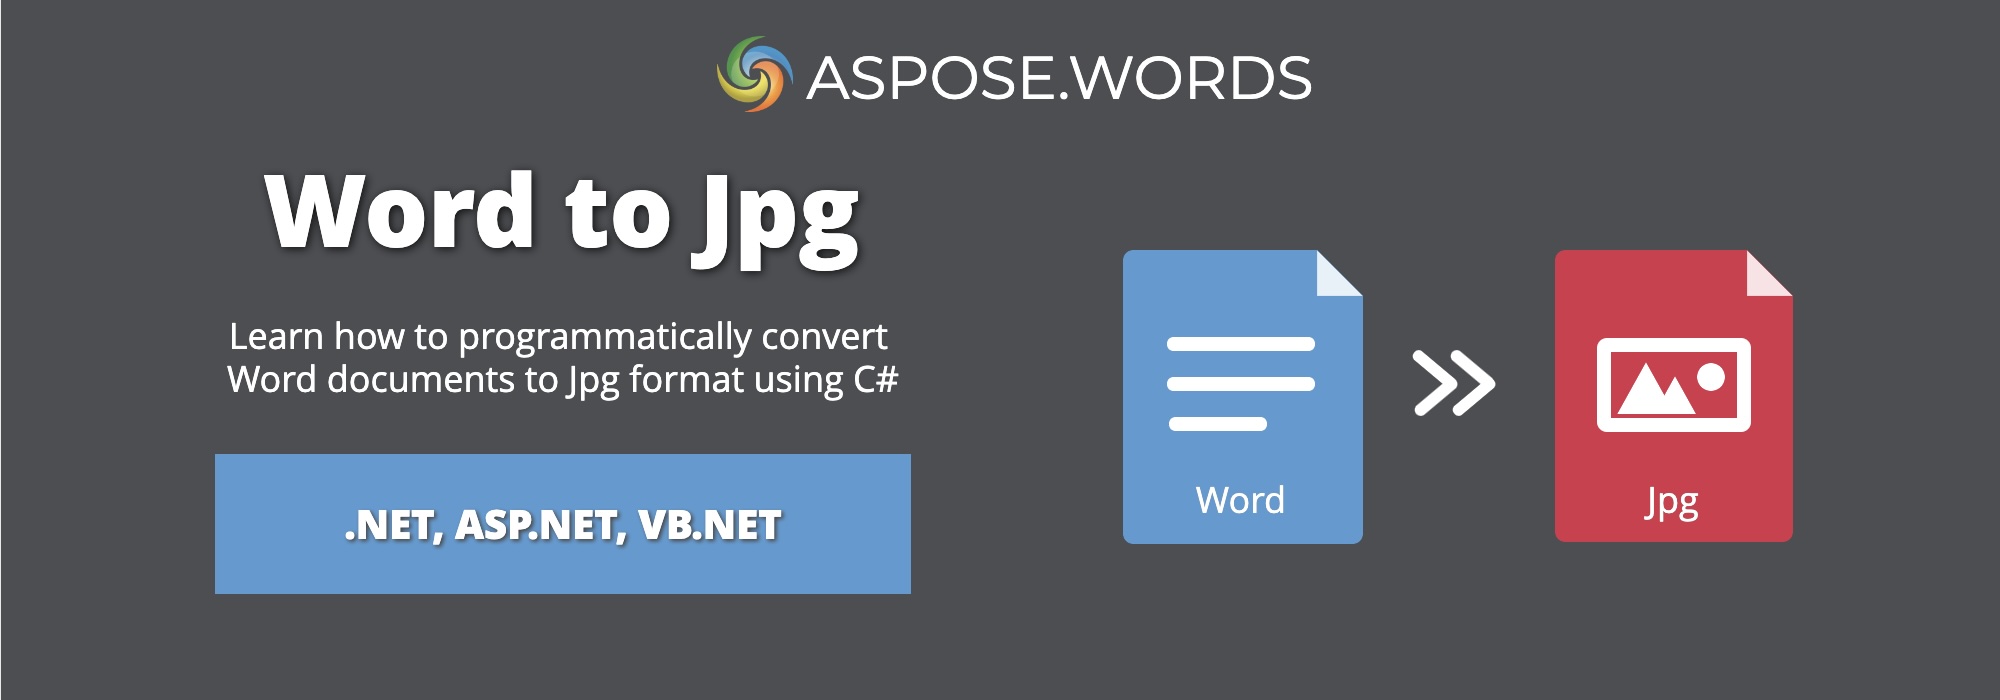 Convertir Word a JPG C# | Convertir DOCX a JPG C#